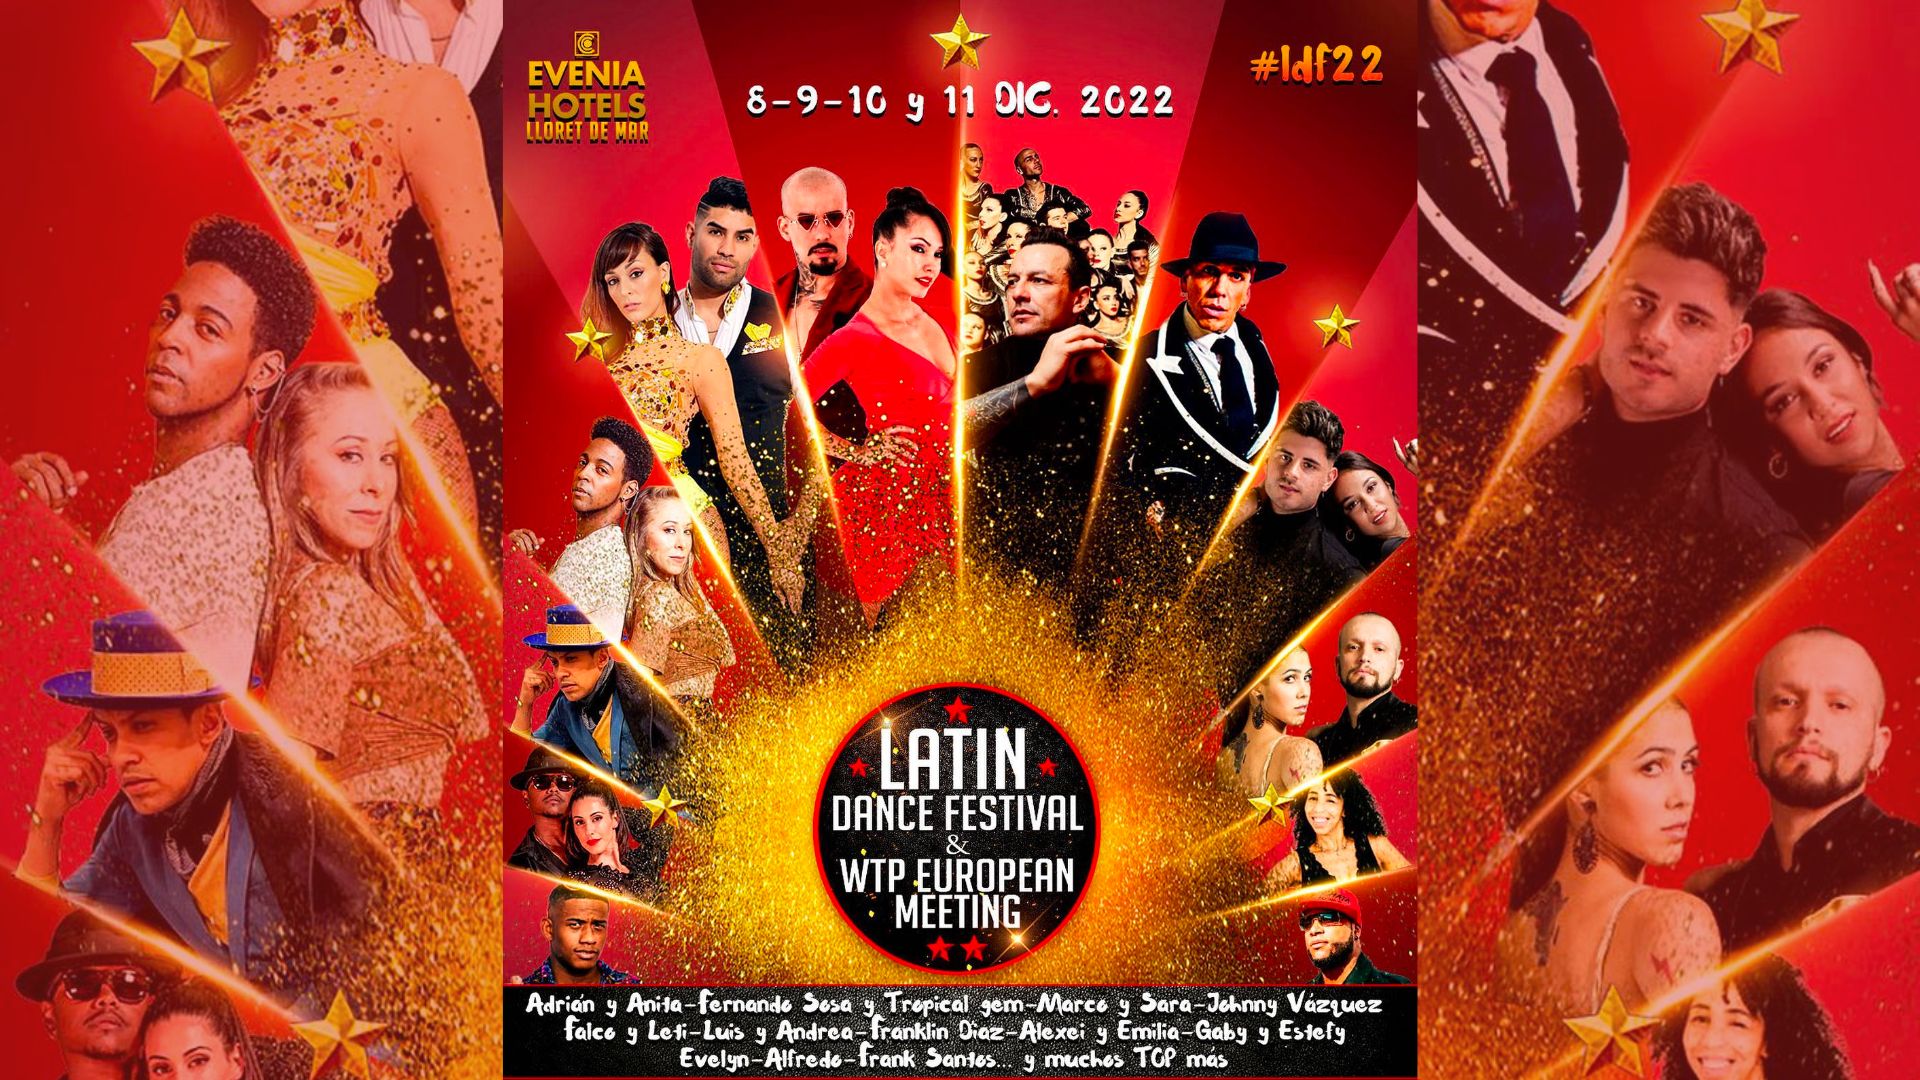 Latin Dance Festival bachataloves.me the best bachata festivals of